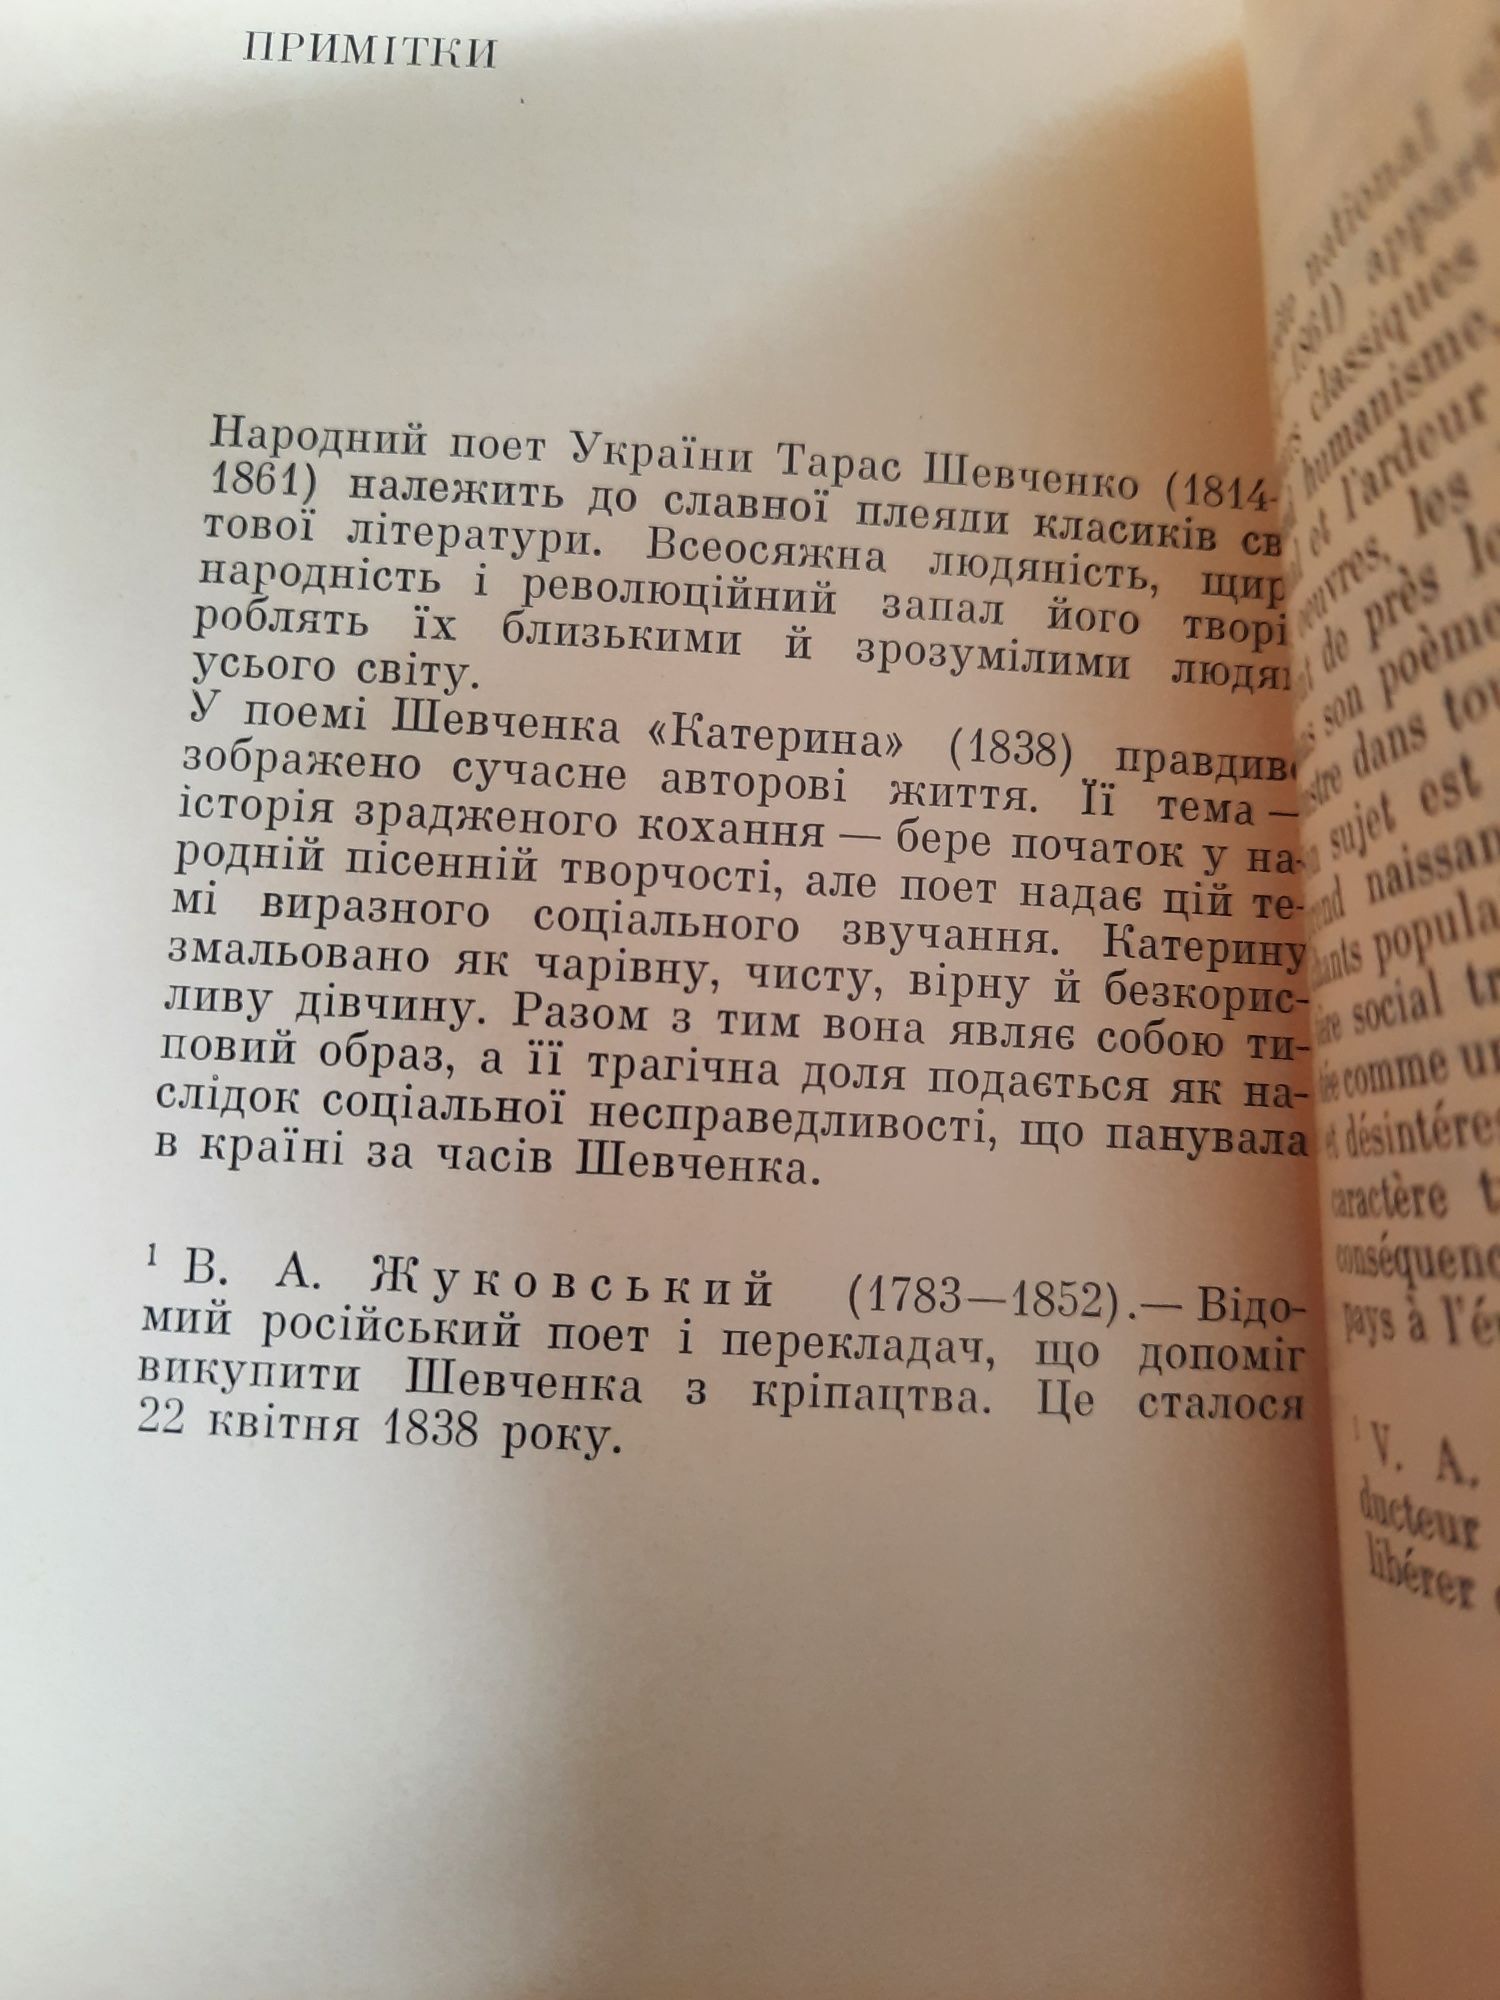 Книга Т.Шевченко" Катерина" українською і французькою мовами. 1973 рі